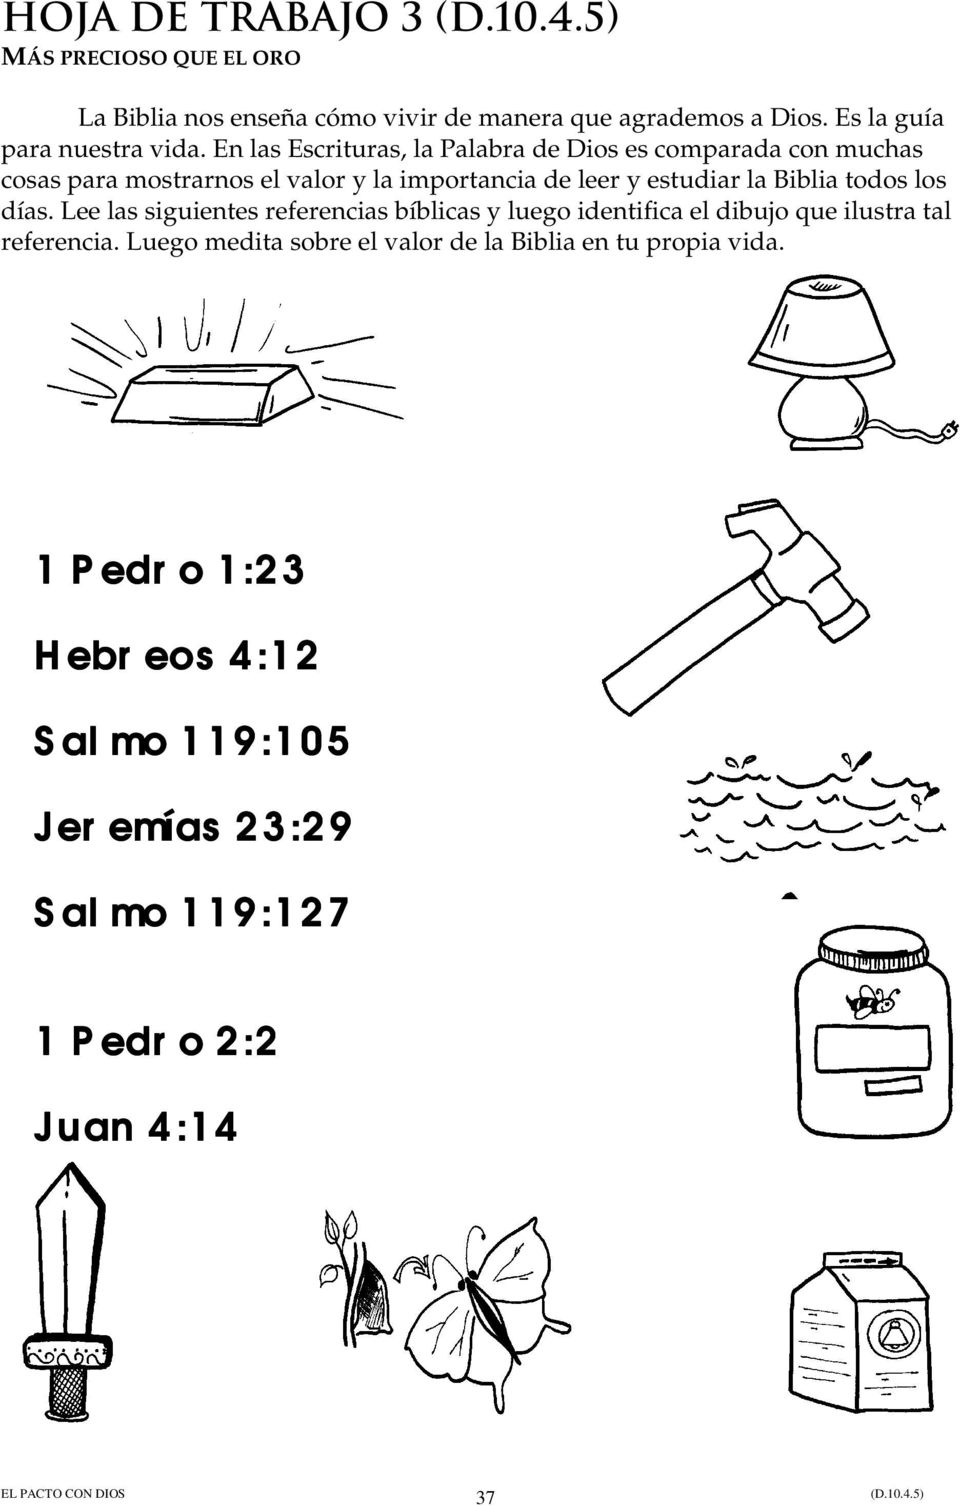 Biblia todos los días. Lee las siguientes referencias bíblicas y luego identifica el dibujo que ilustra tal referencia.